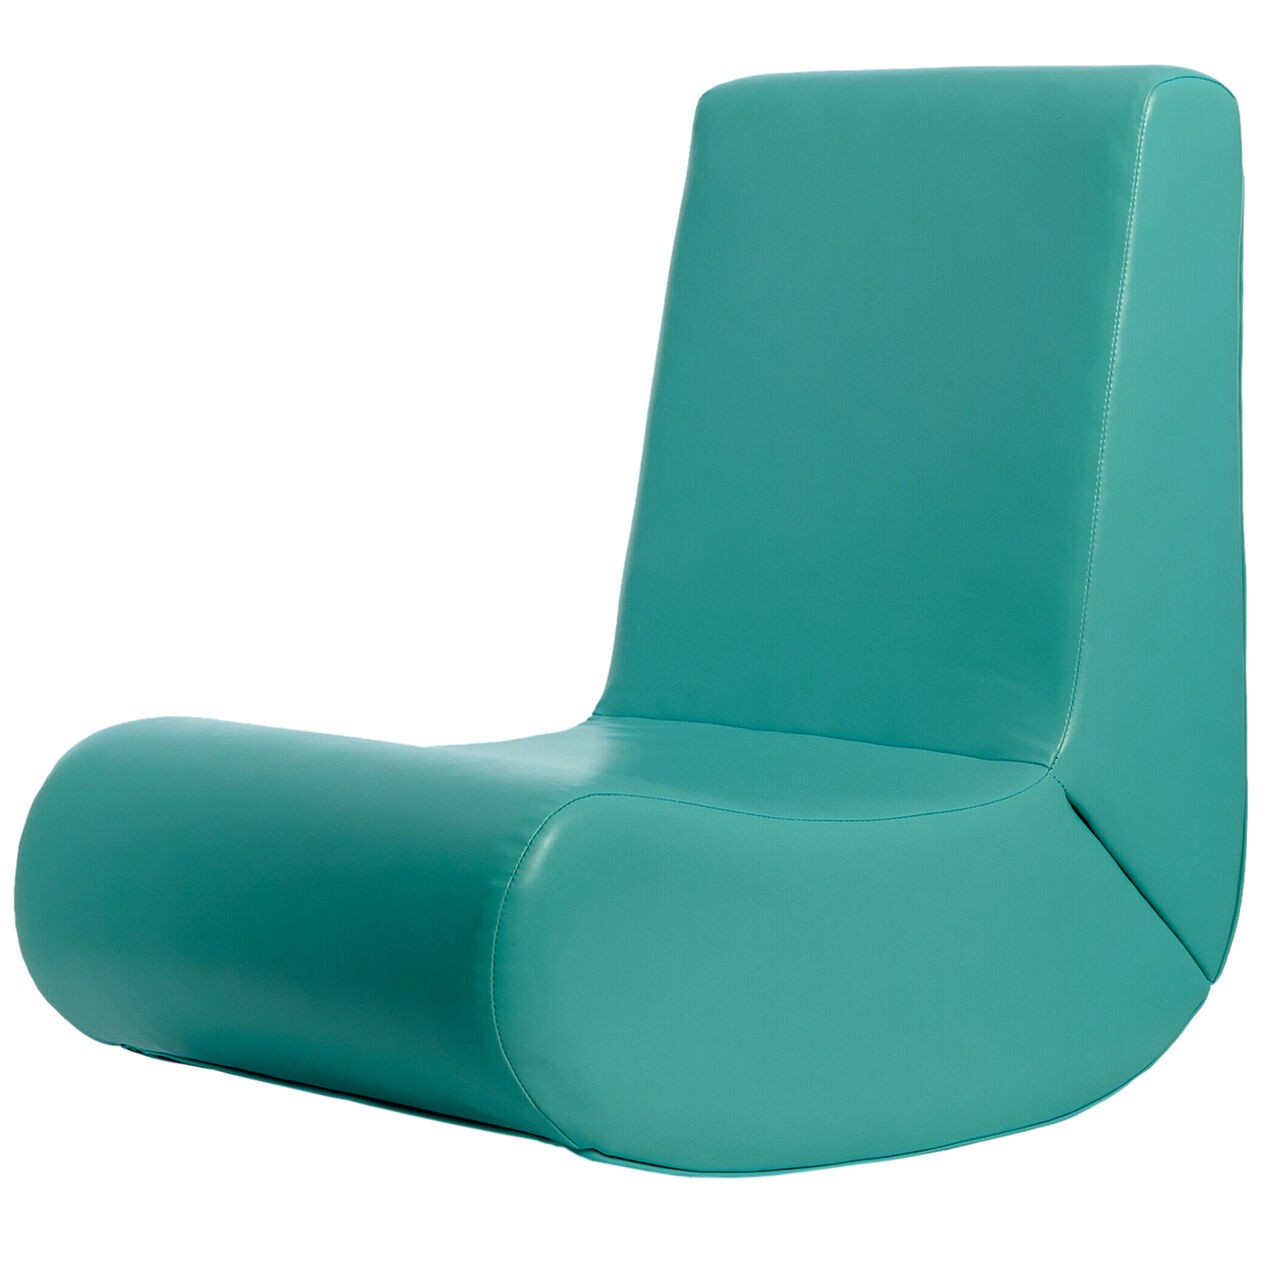 Green floor rocker chair at home